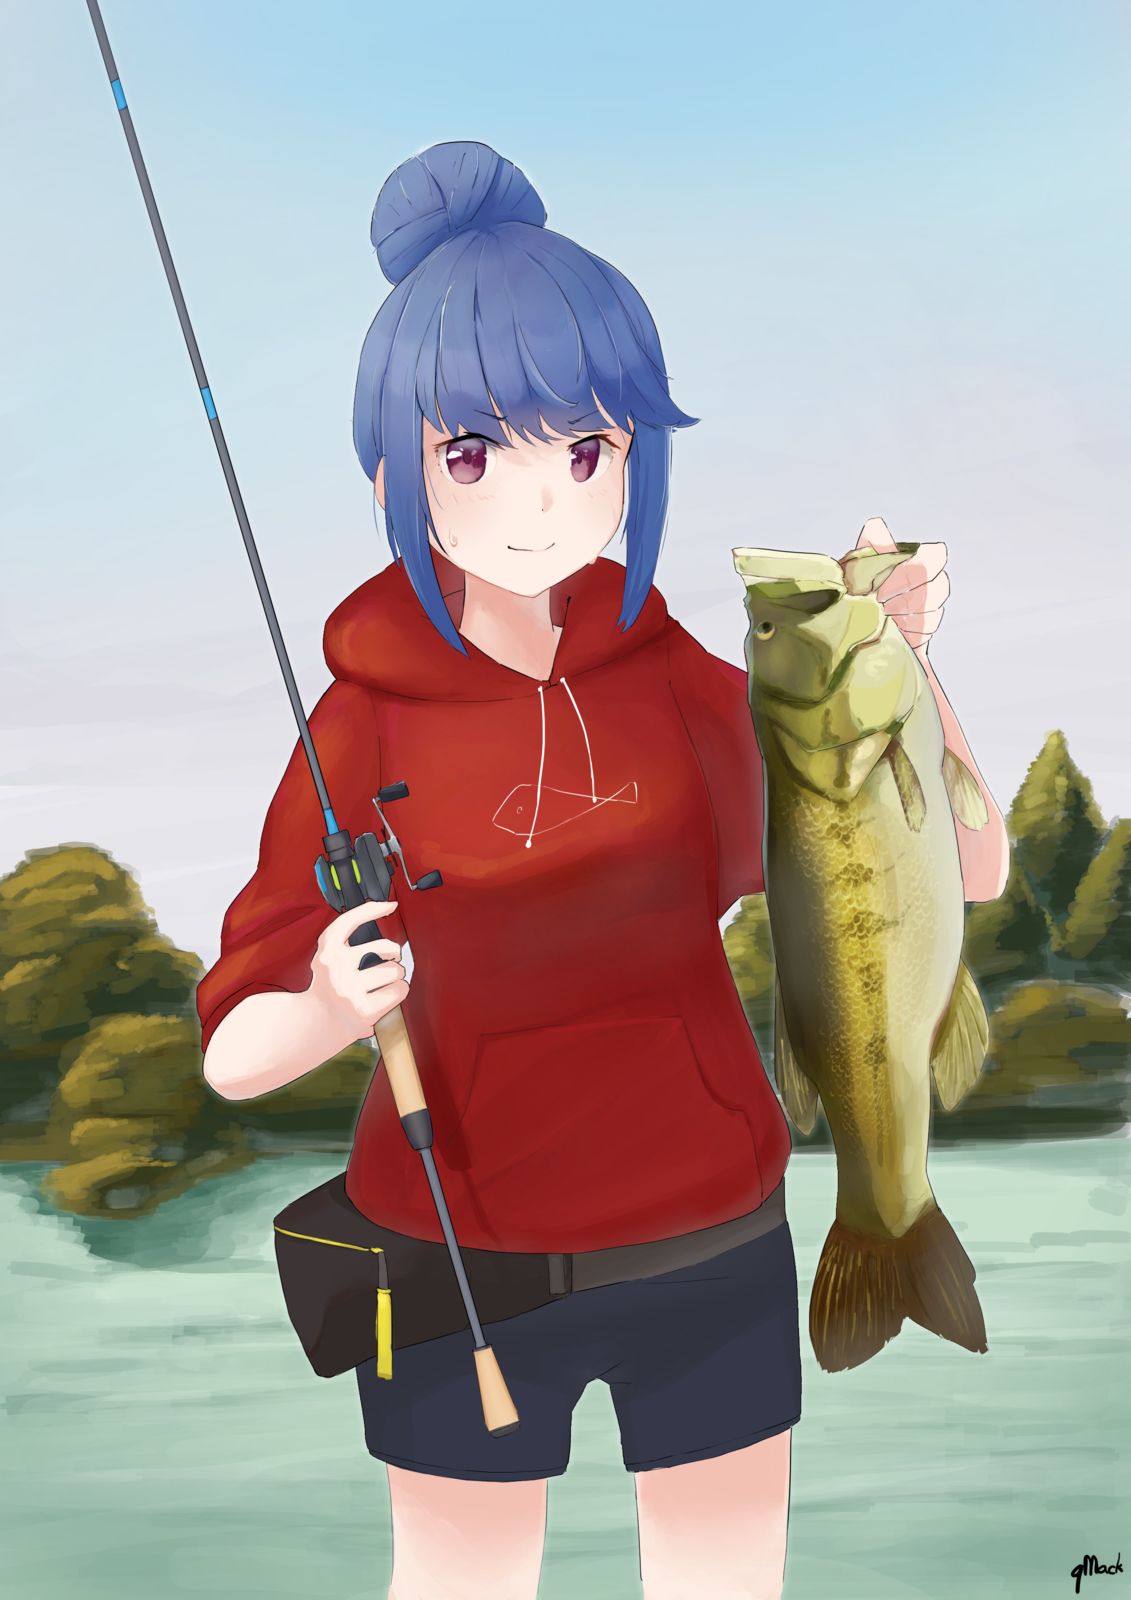 bass fishing插画图片壁纸